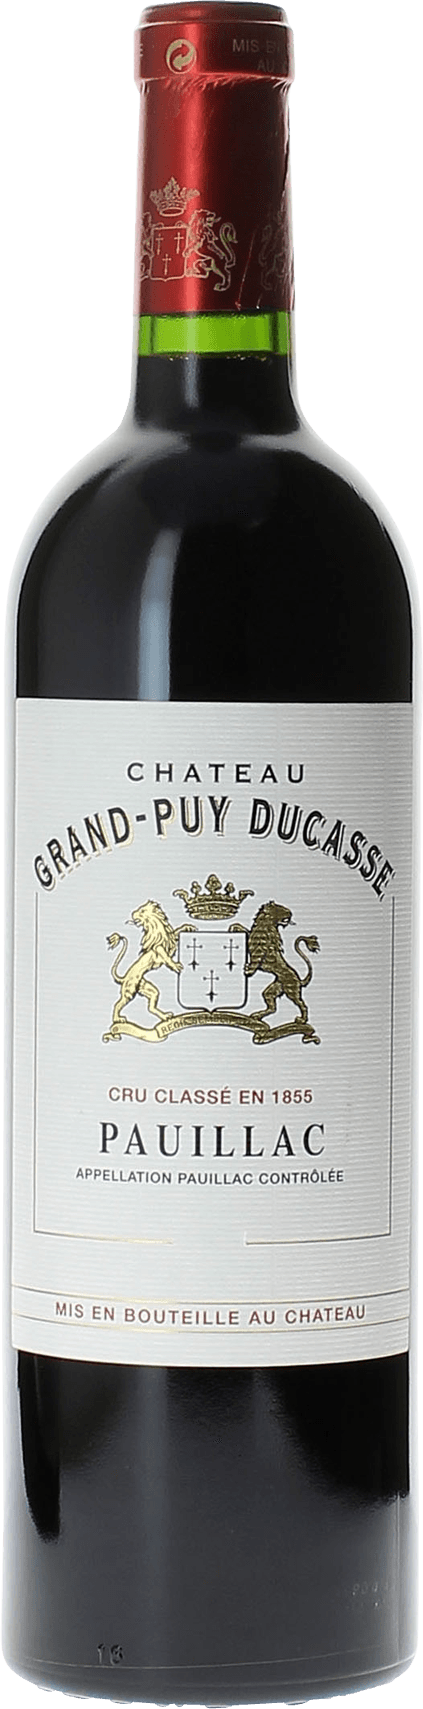 Grand puy ducasse 2001 5 me Grand cru class Pauillac, Bordeaux rouge